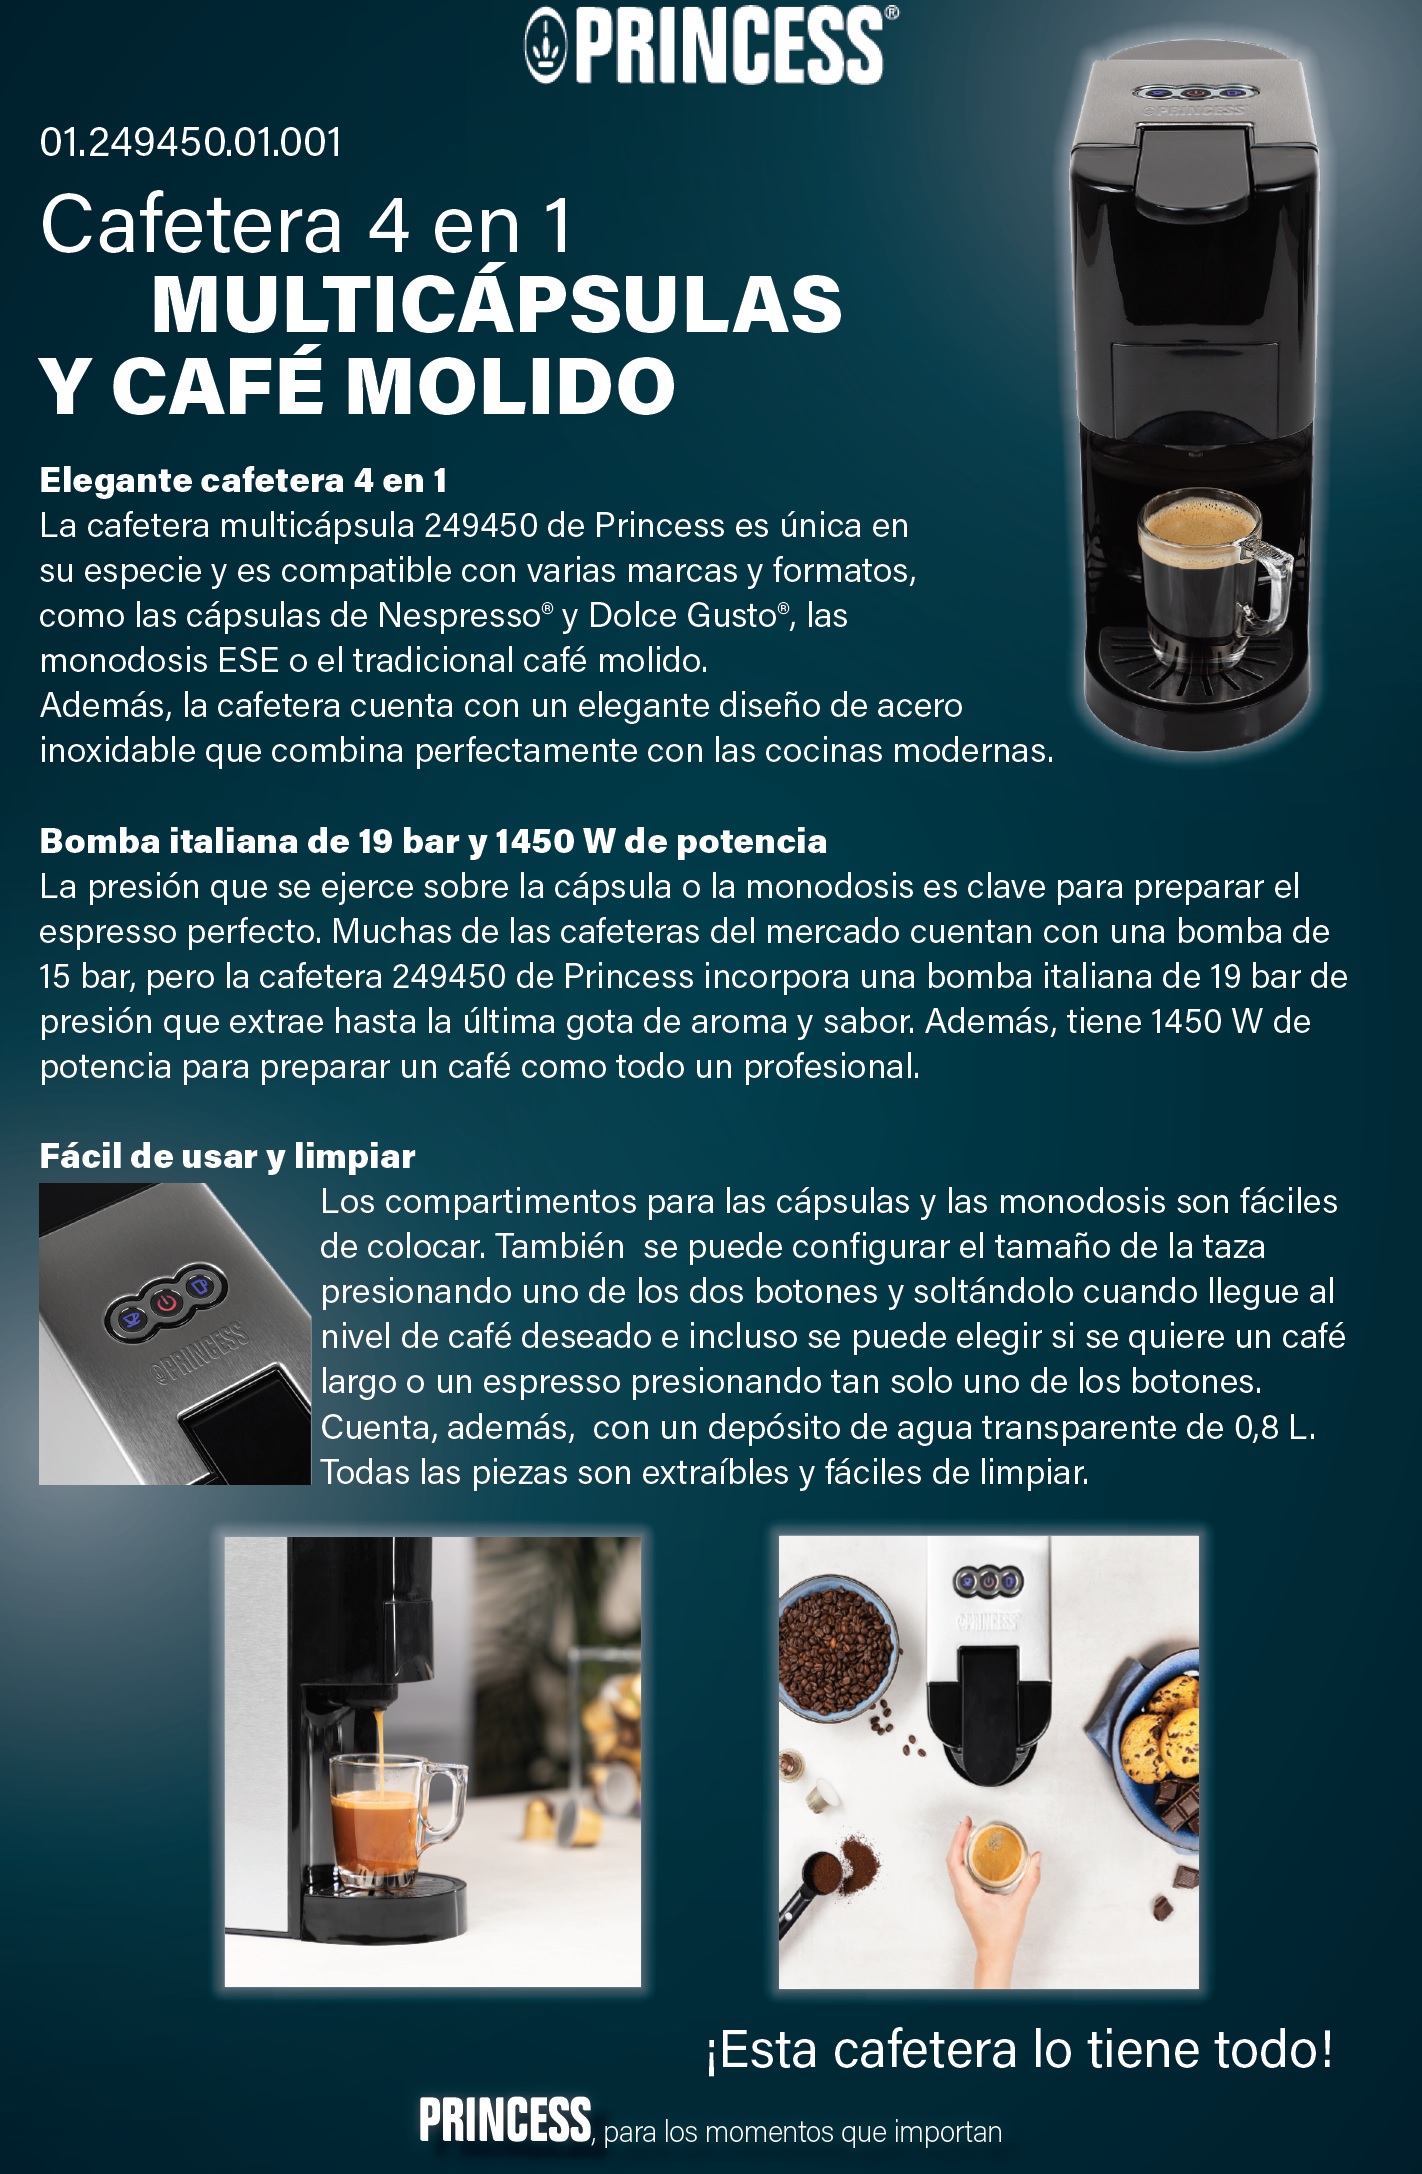 Cafetera eléctrica 4en1 Multicapsula 1450w 19bares Princess — Ferretería  Luma